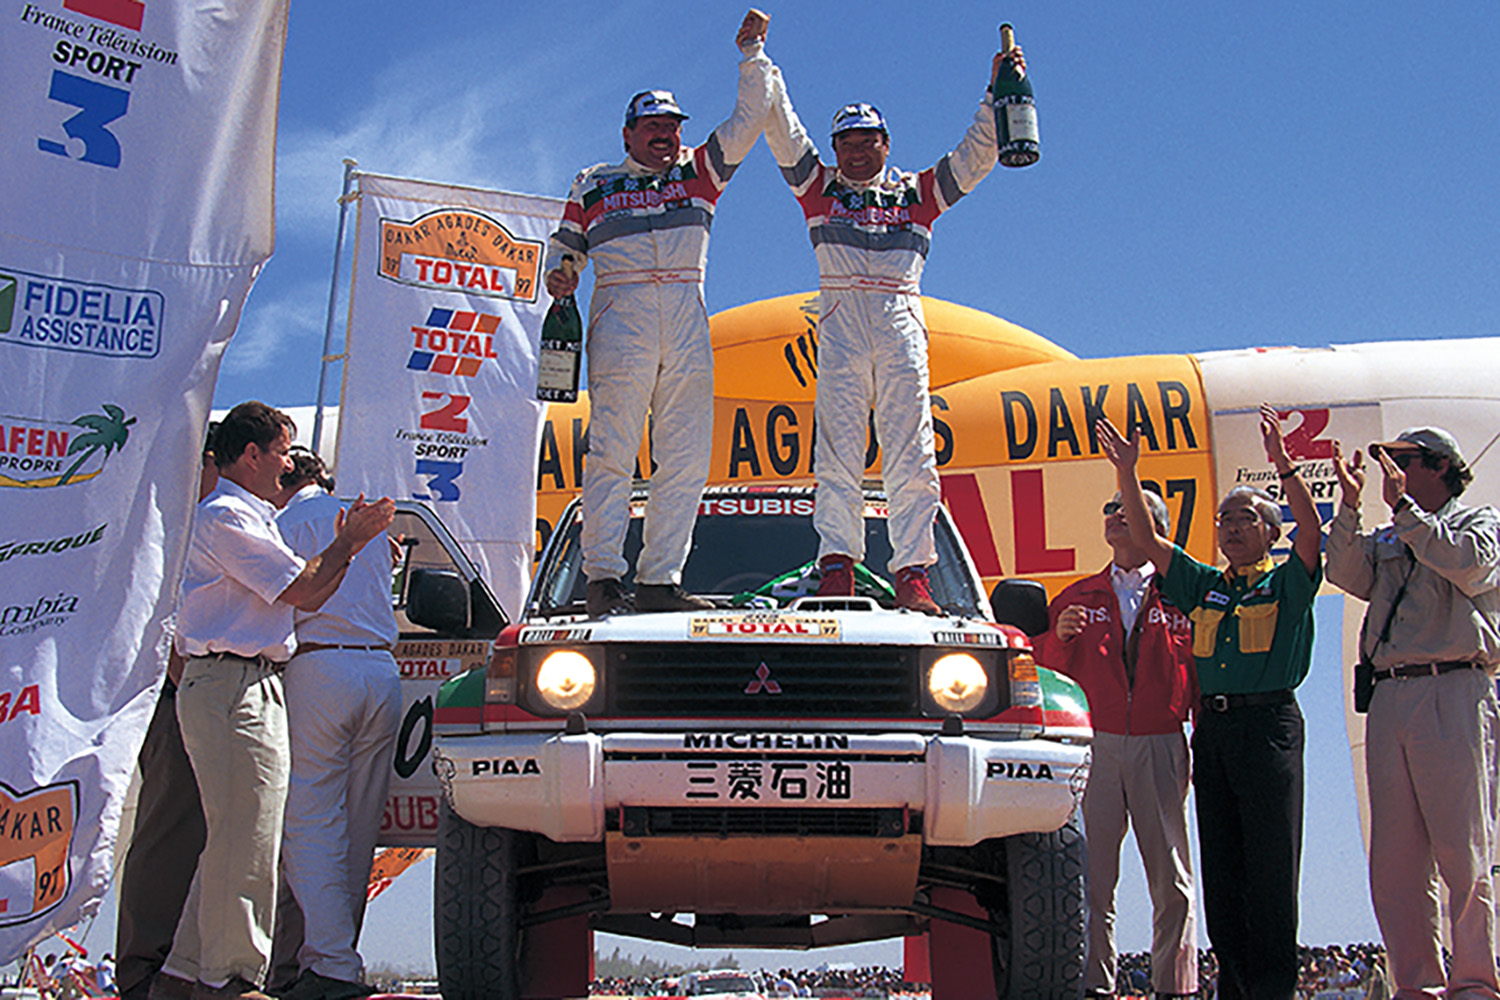 1997年三菱パジェロでパリ-ダカールラリーを初優勝した篠塚健次郎さん